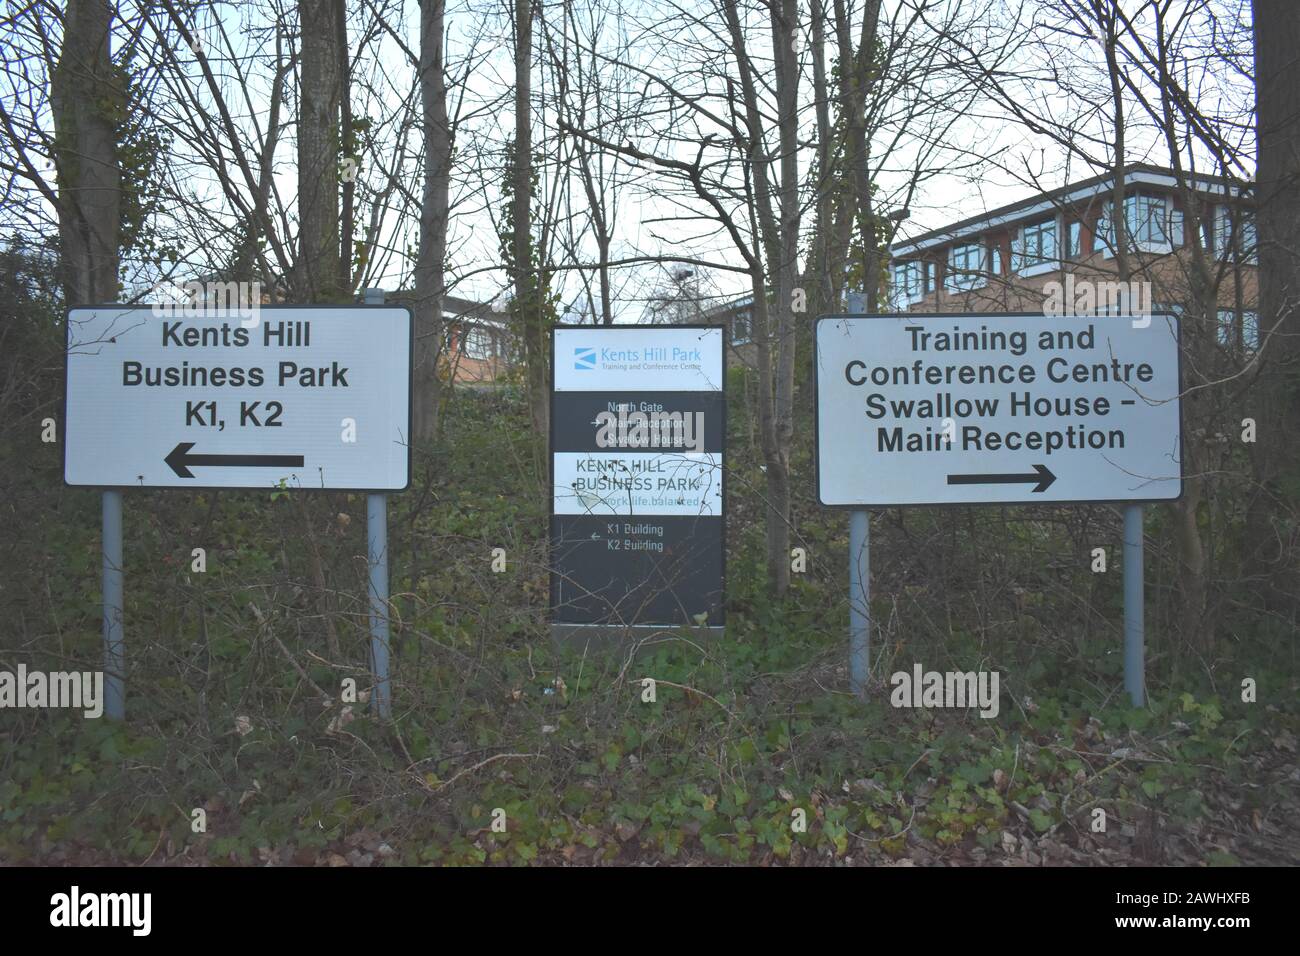 La señal para el Centro de Entrenamiento y Conferencias de Kents Hill Park, que alberga a personas evacuadas de China debido al brote de coronavirus en febrero de 2020. Foto de stock